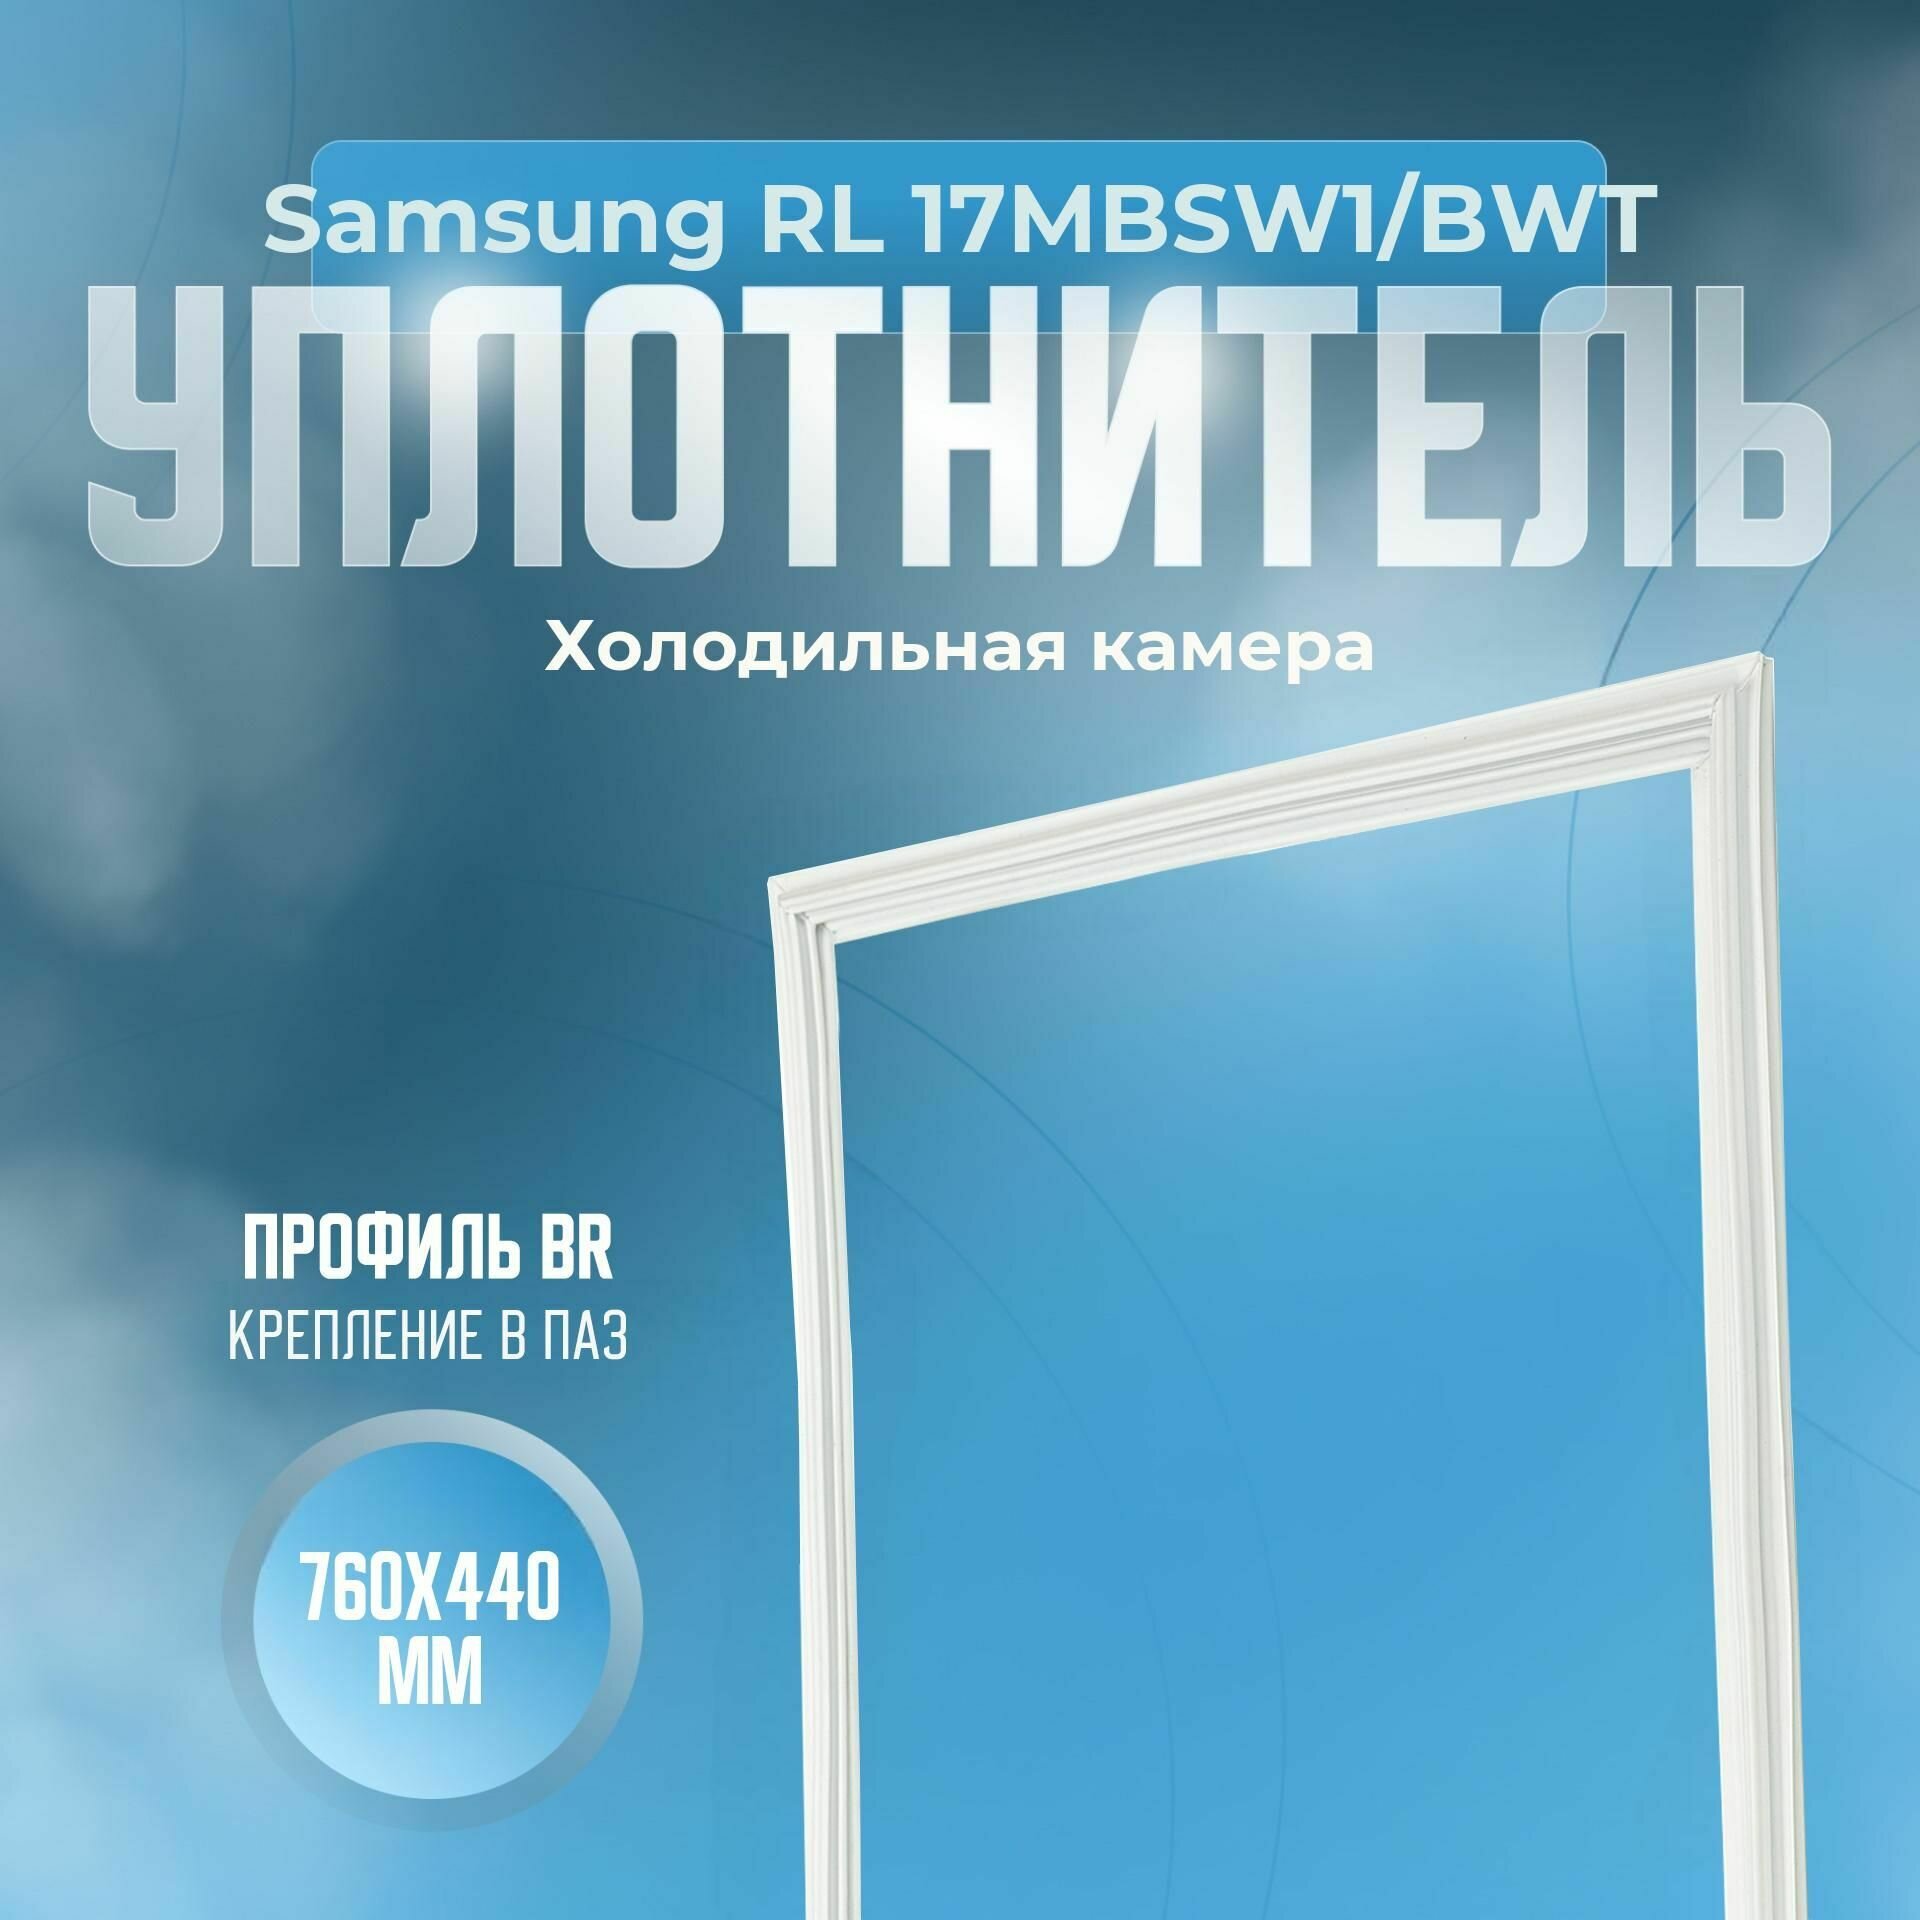 Уплотнитель Samsung RL 17MBSW1/BWT. х. к, Размер - 760х440 мм. BR